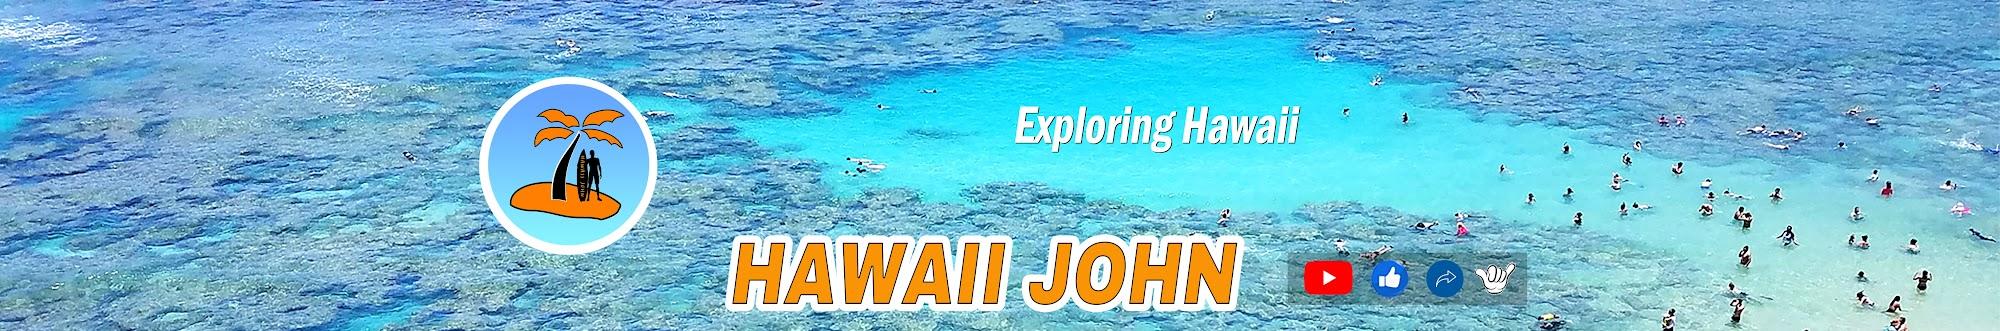 Hawaii John